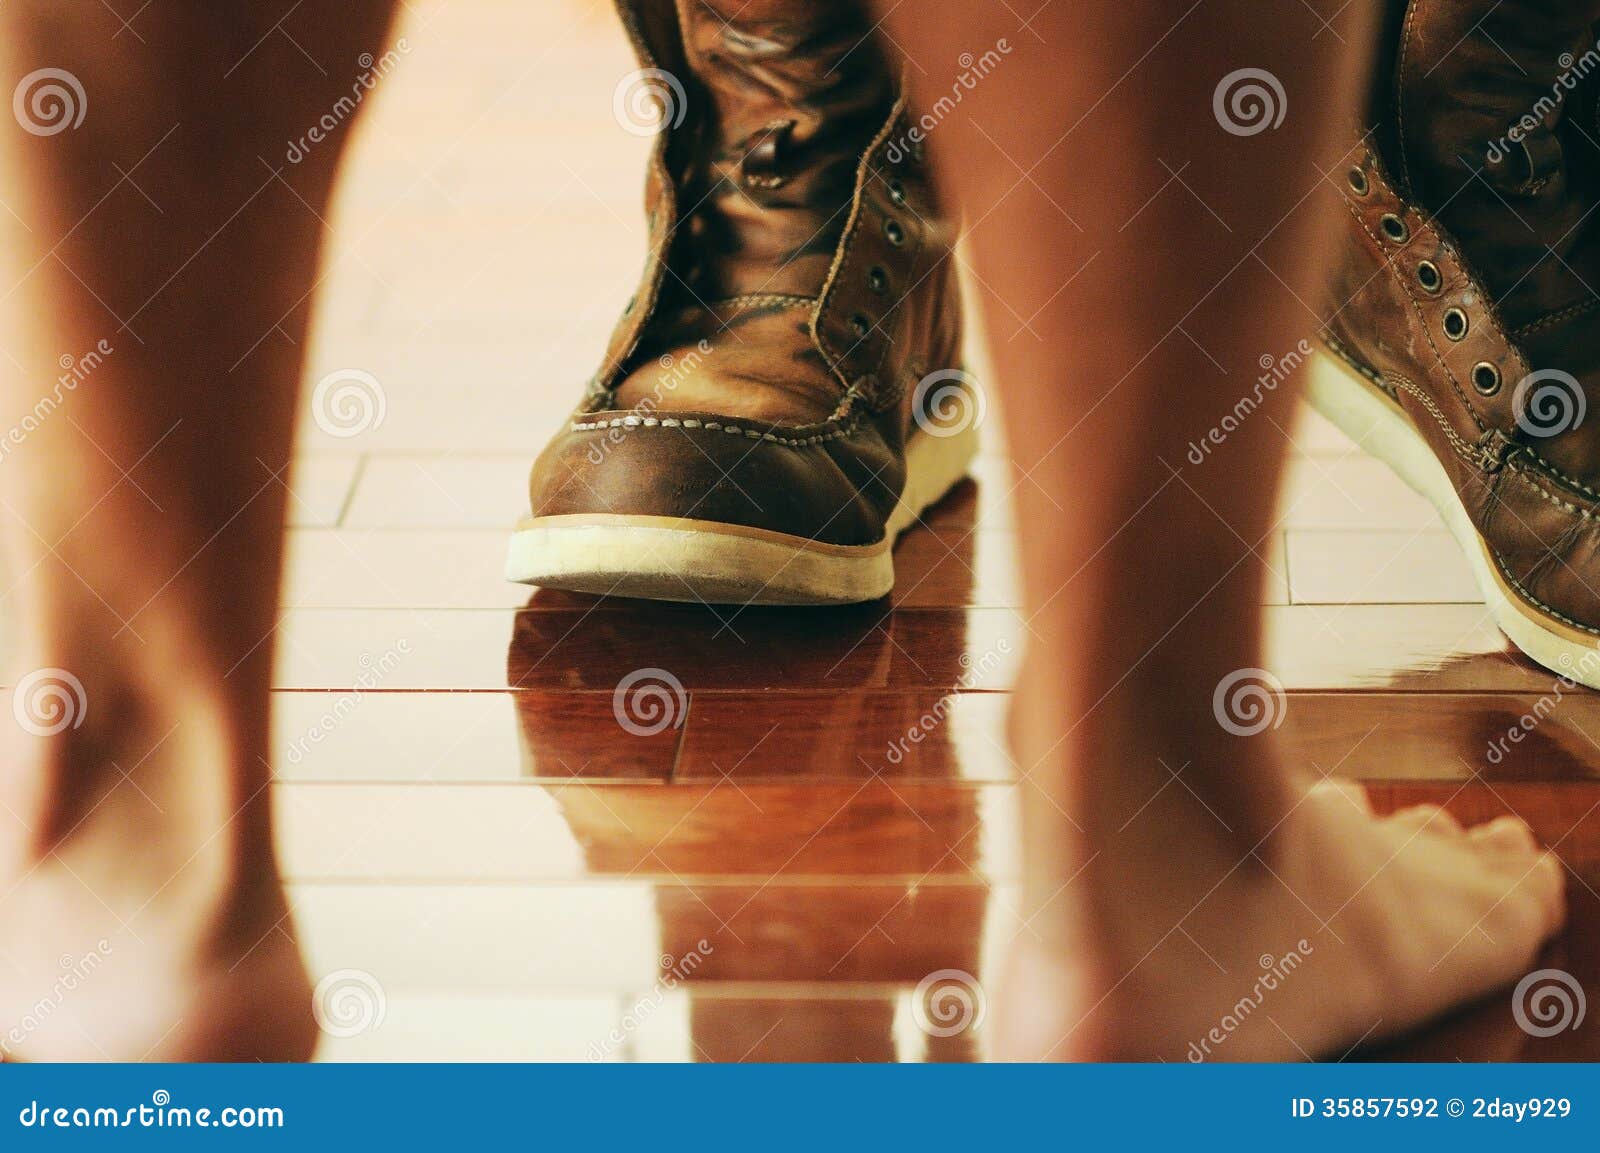 Minhas botas. Imagem do homem e das suas botas.